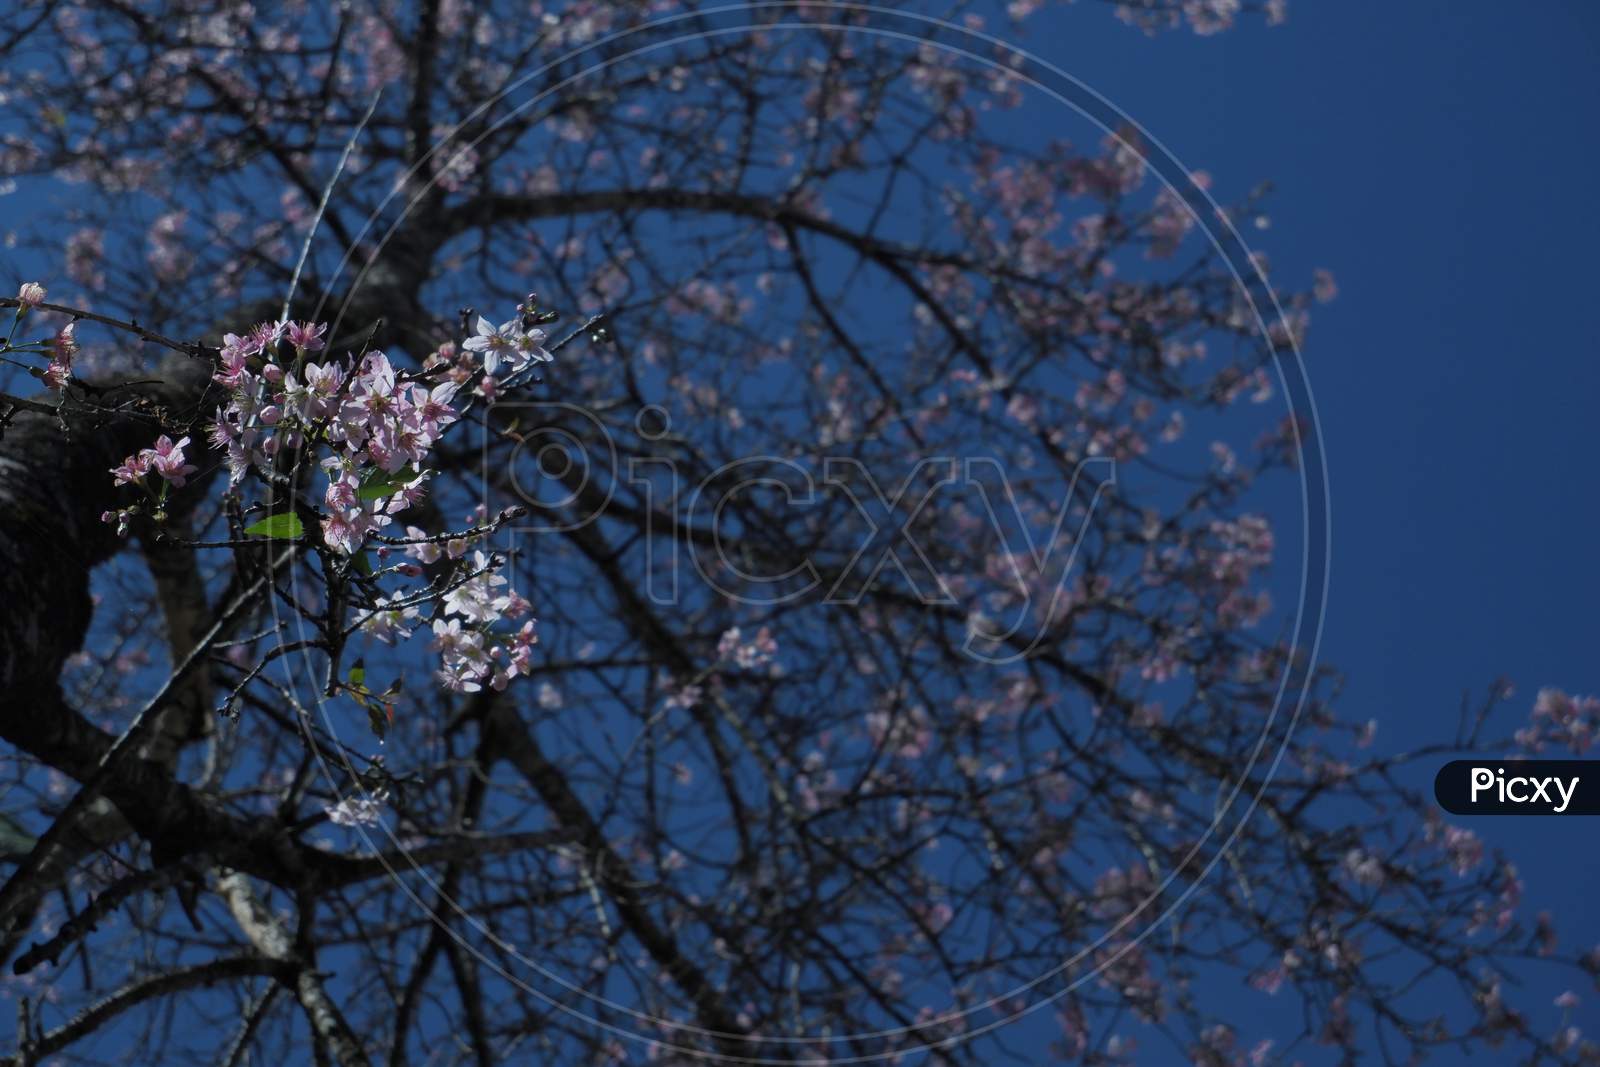 III. Cherry Blossom Tree